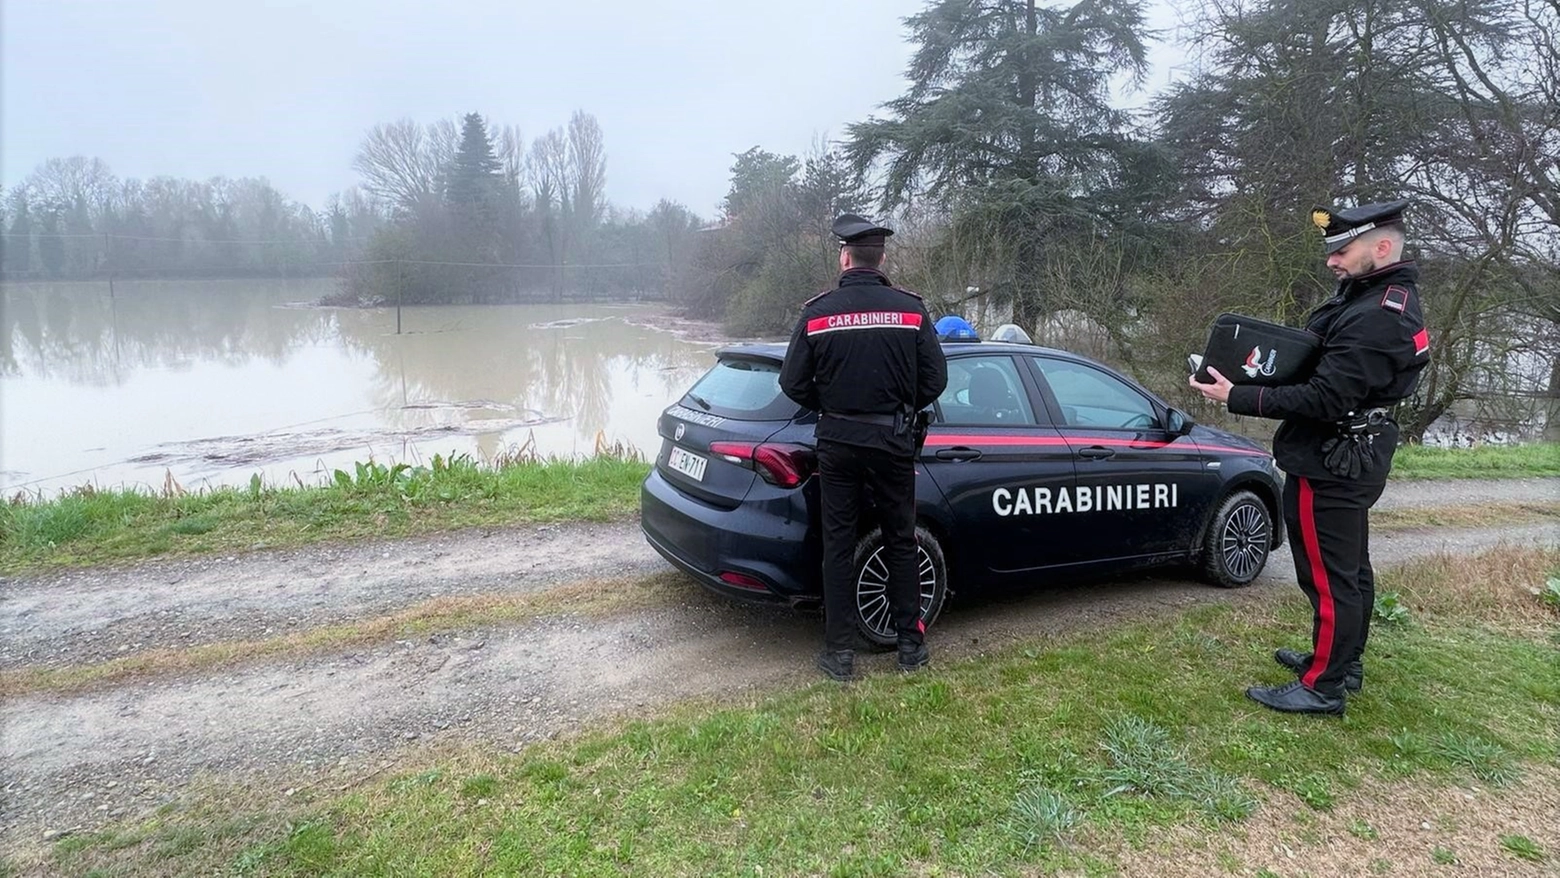 Maltempo in Emilia Romagna, allerta fiumi: controlli dei carabinieri nel Bolognese